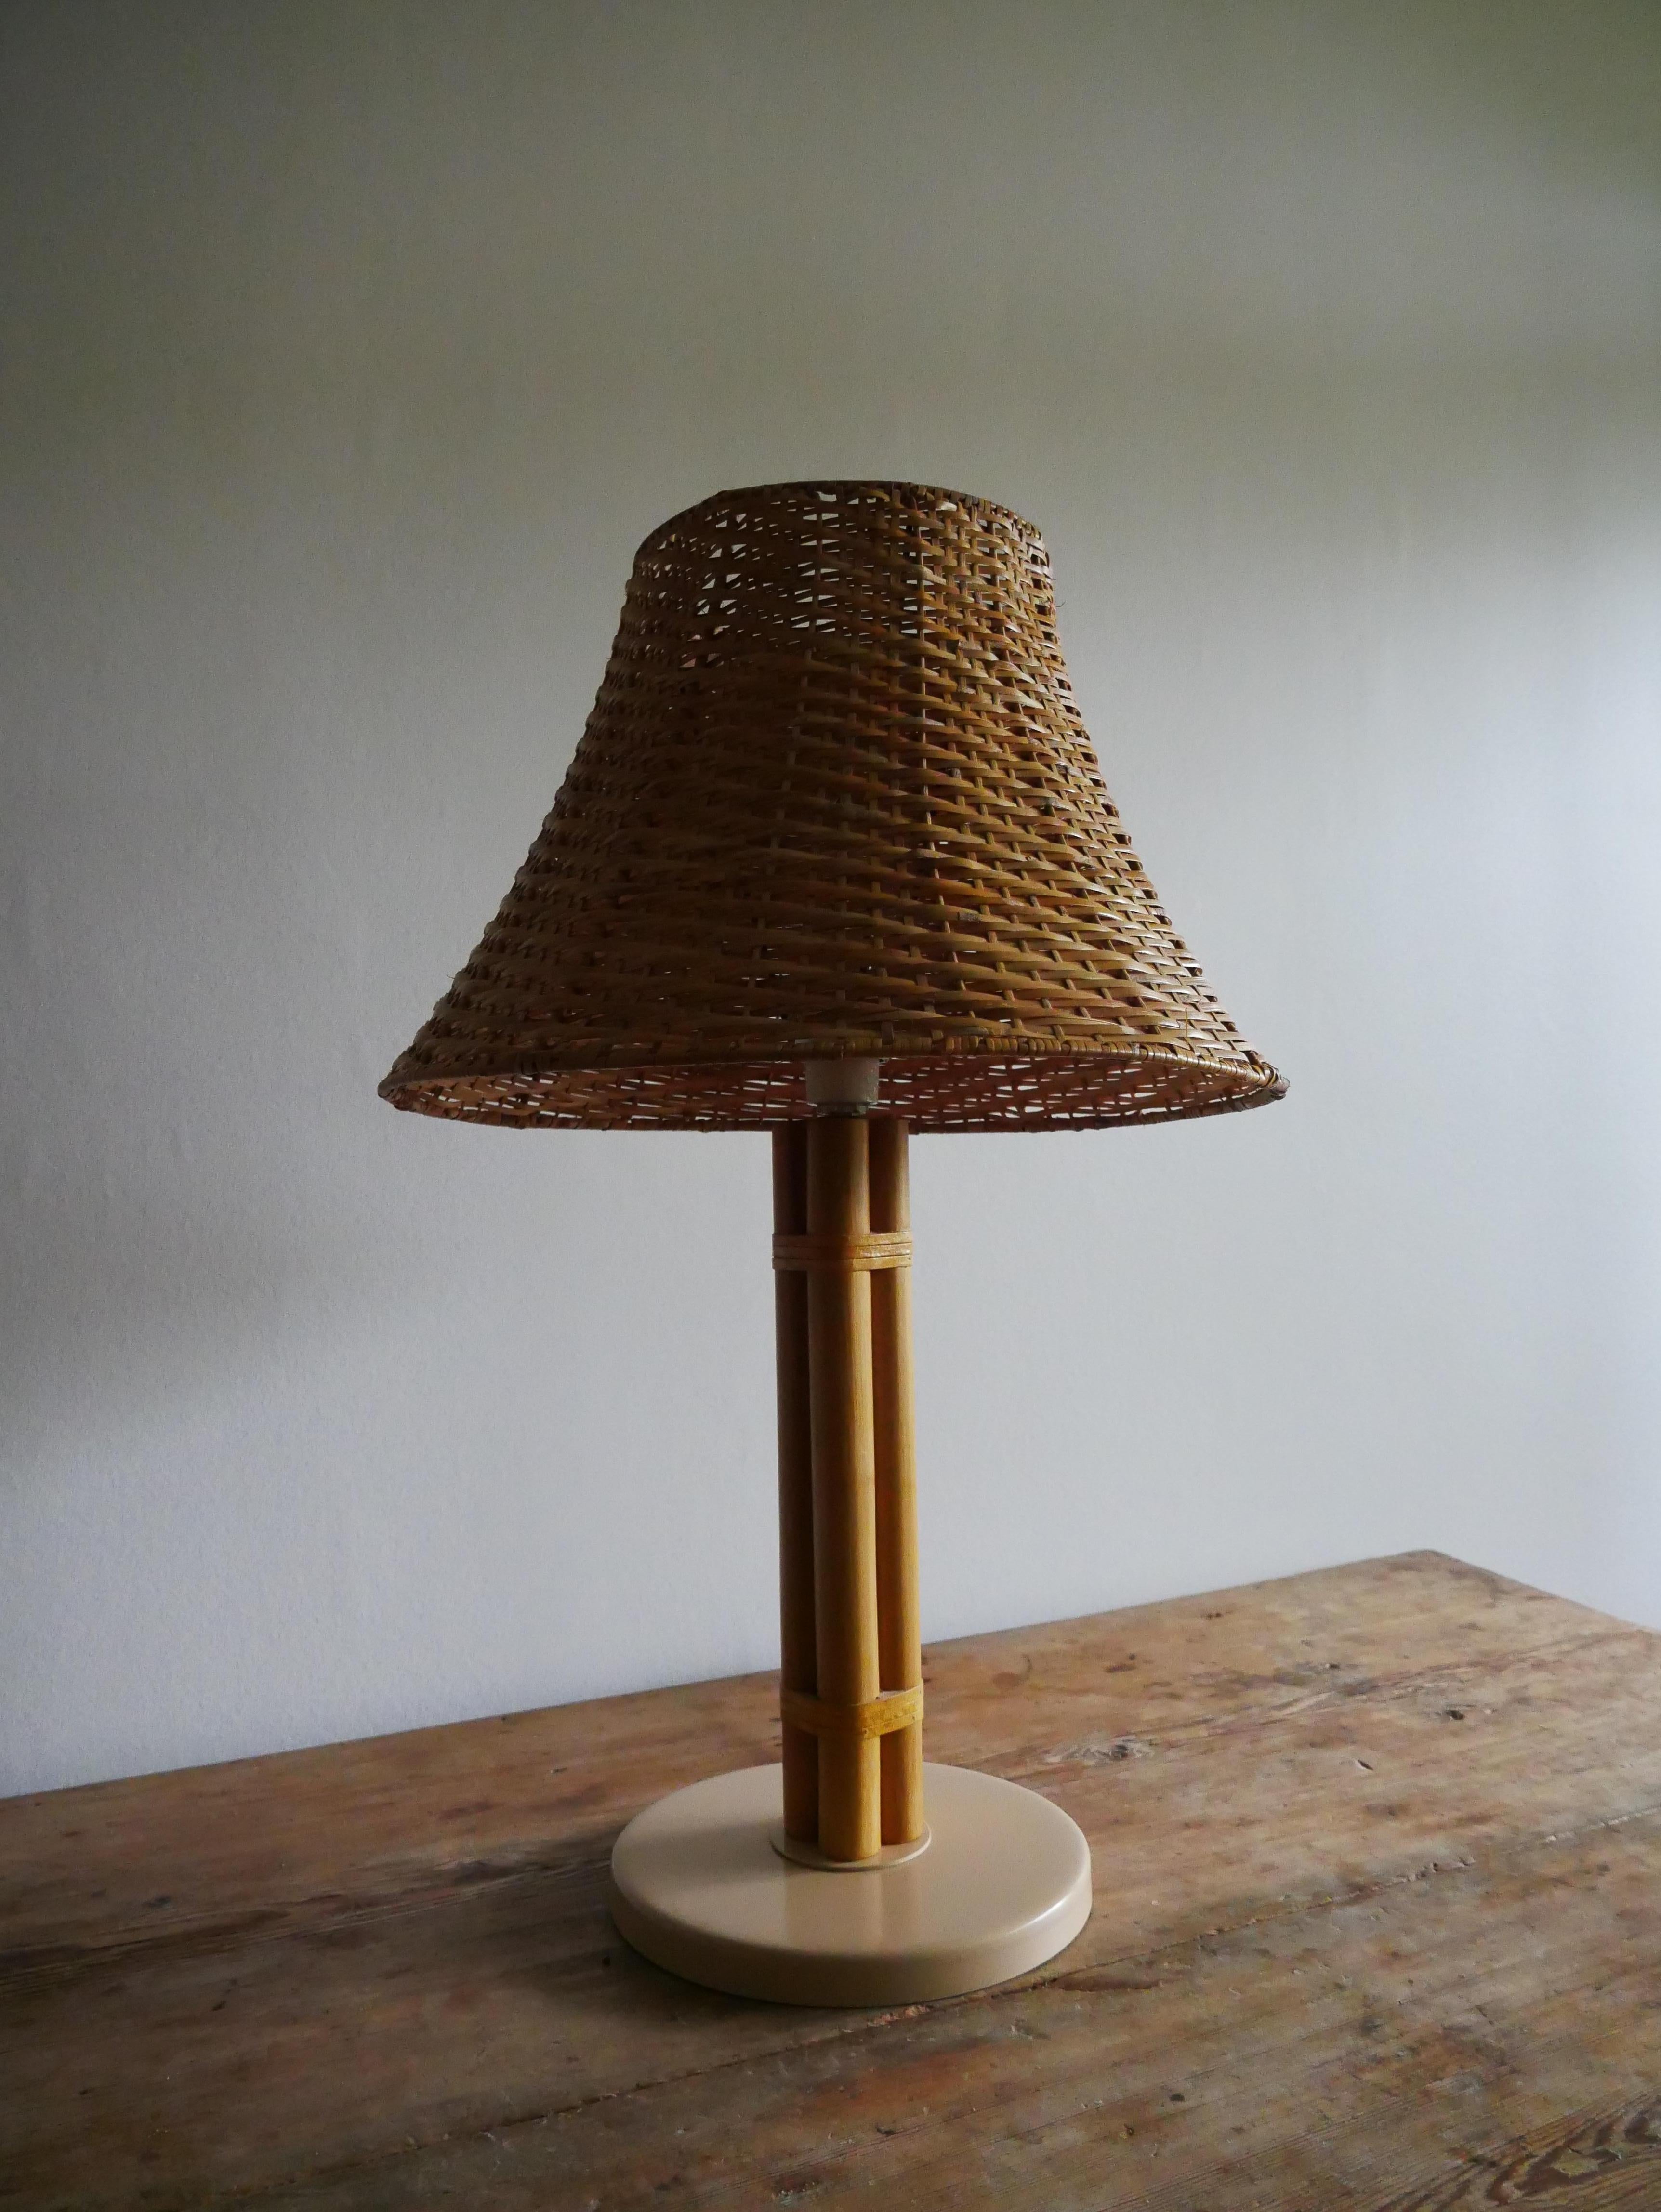 Skandinavische Tischleuchte aus Messing und Bambus von Bergboms, Schweden, 1960er Jahre.

Modell B-105.

Diese Lampe ist aus Bambus mit Details aus Leder gefertigt.

Die Lampe wird mit einem Rattan-Lampenschirm geliefert.